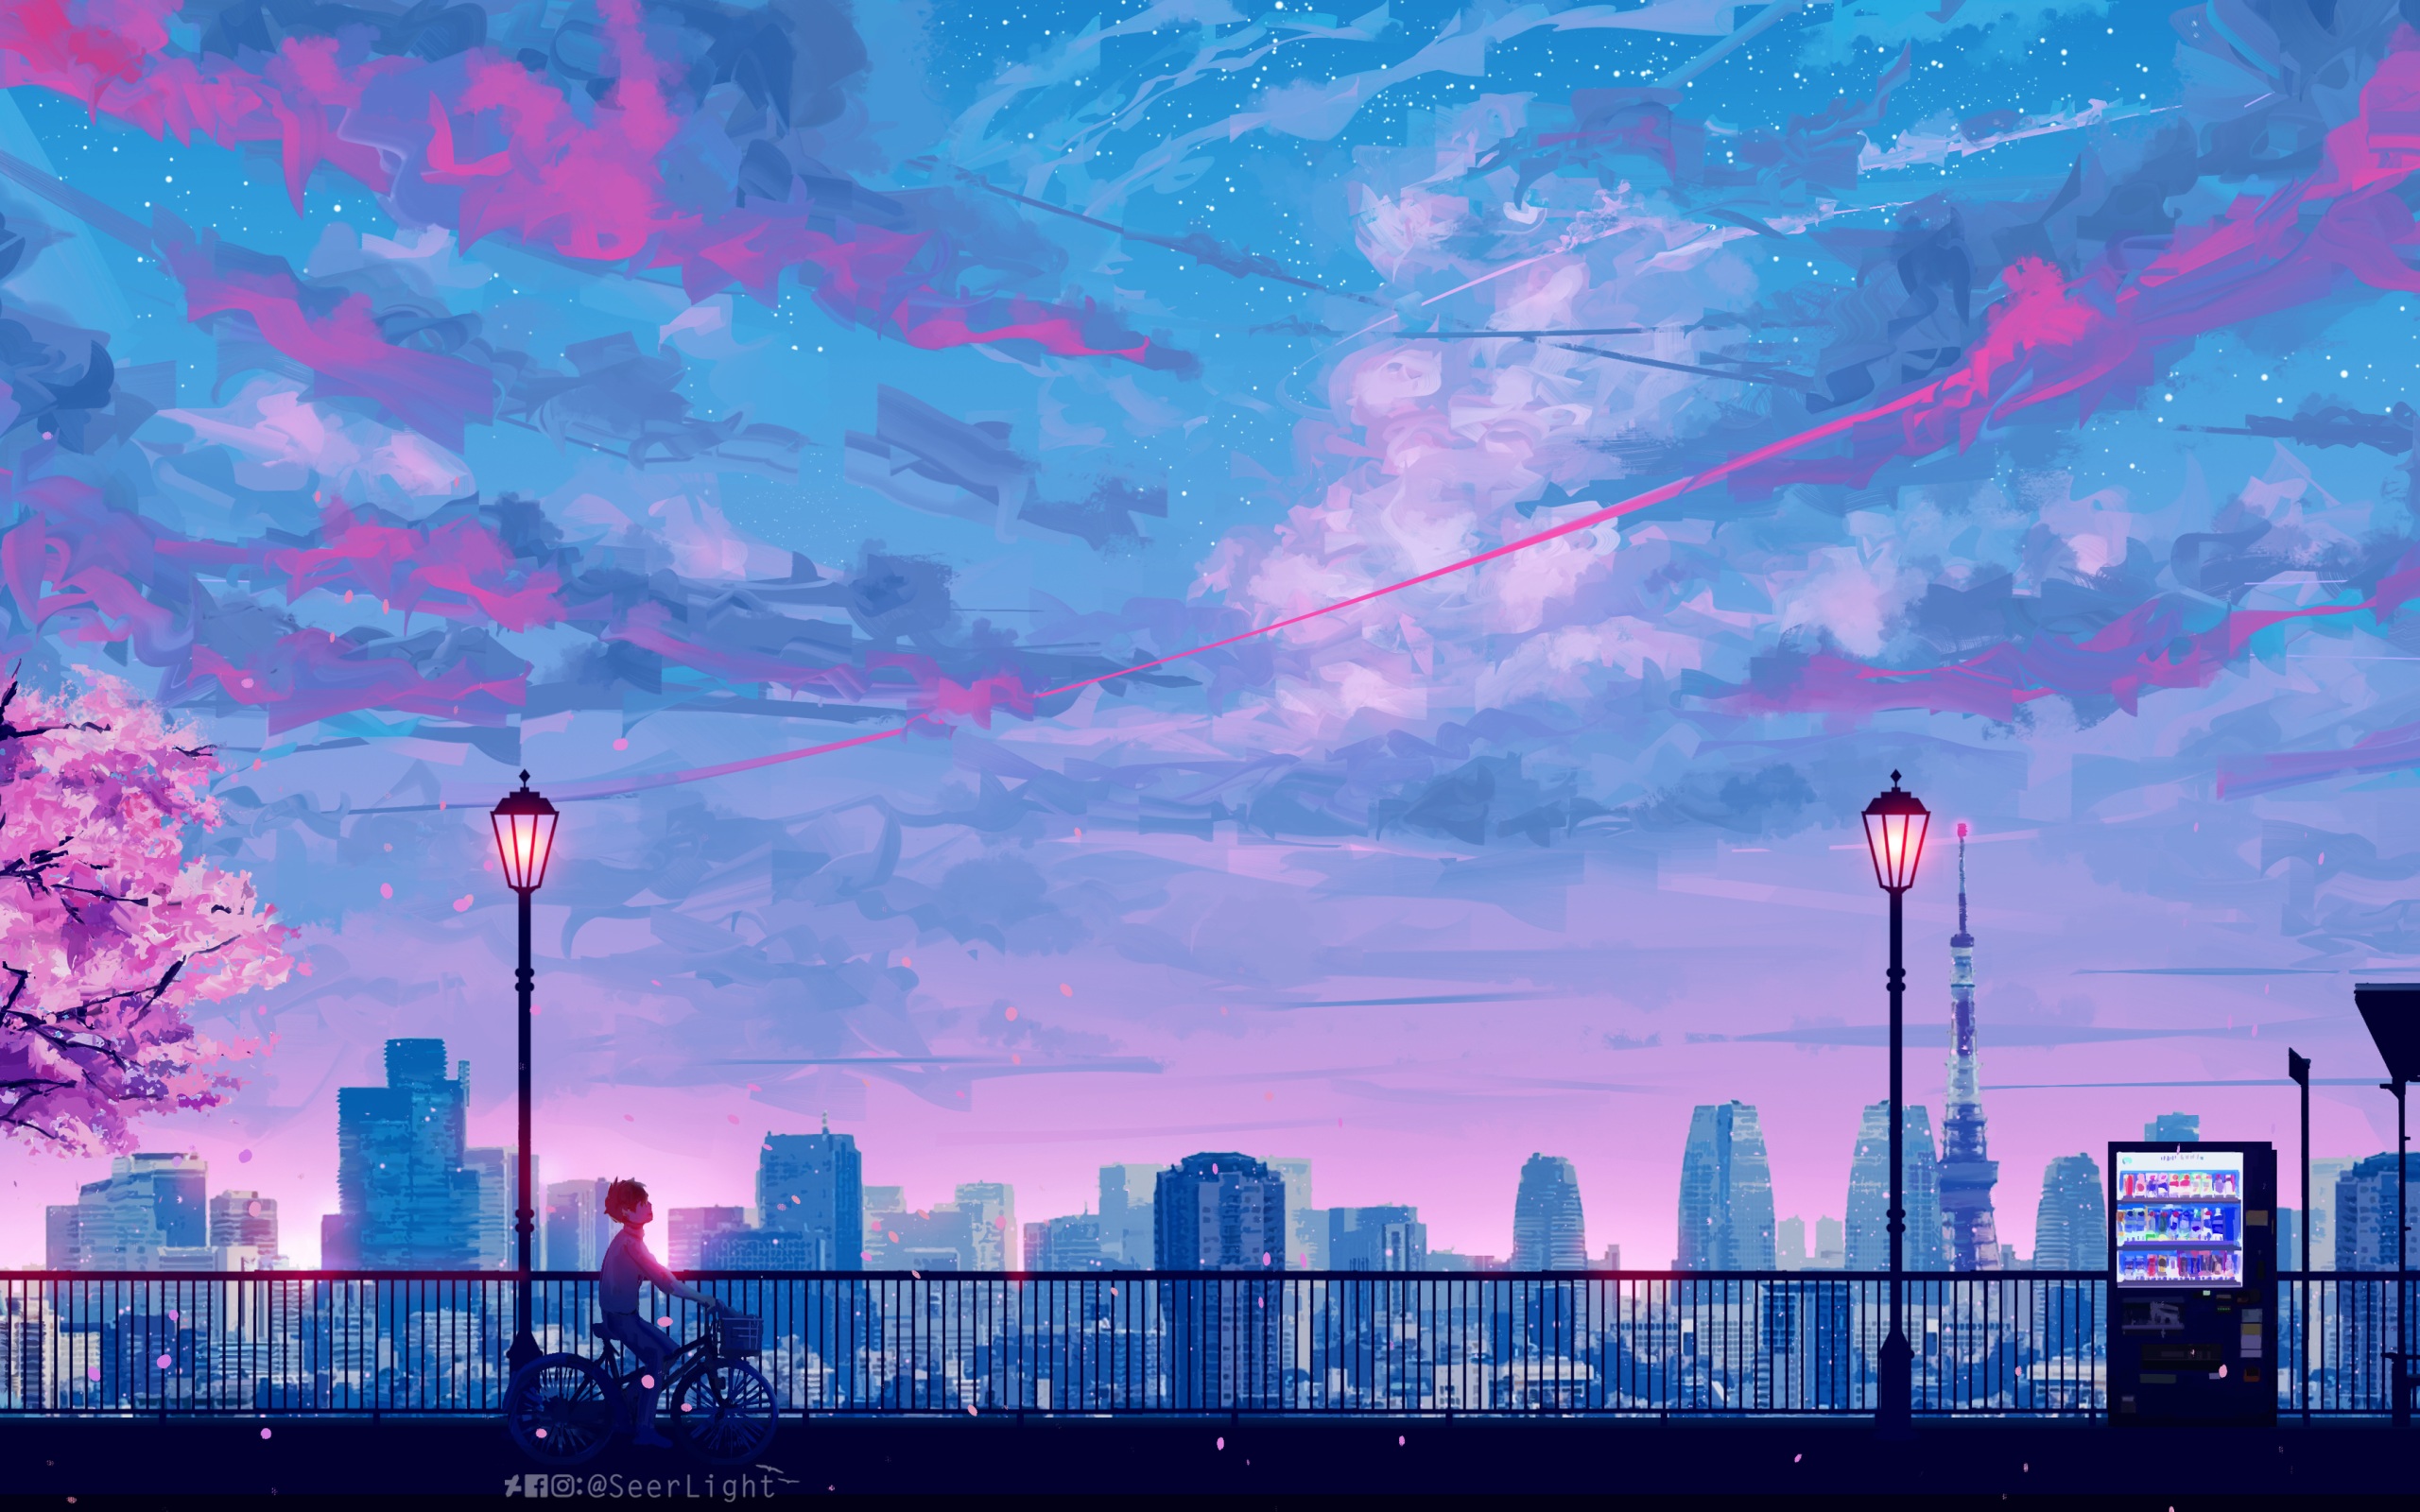 Nếu bạn thích Anime và những dòng phim tiên hiệp, thì không thể bỏ qua những bức hình anime cityscape đẹp mắt. Tựa như một bộ phim viễn tưởng, bạn sẽ được chìm đắm trong những thành phố ảo tuyệt đẹp và đầy mê hoặc.